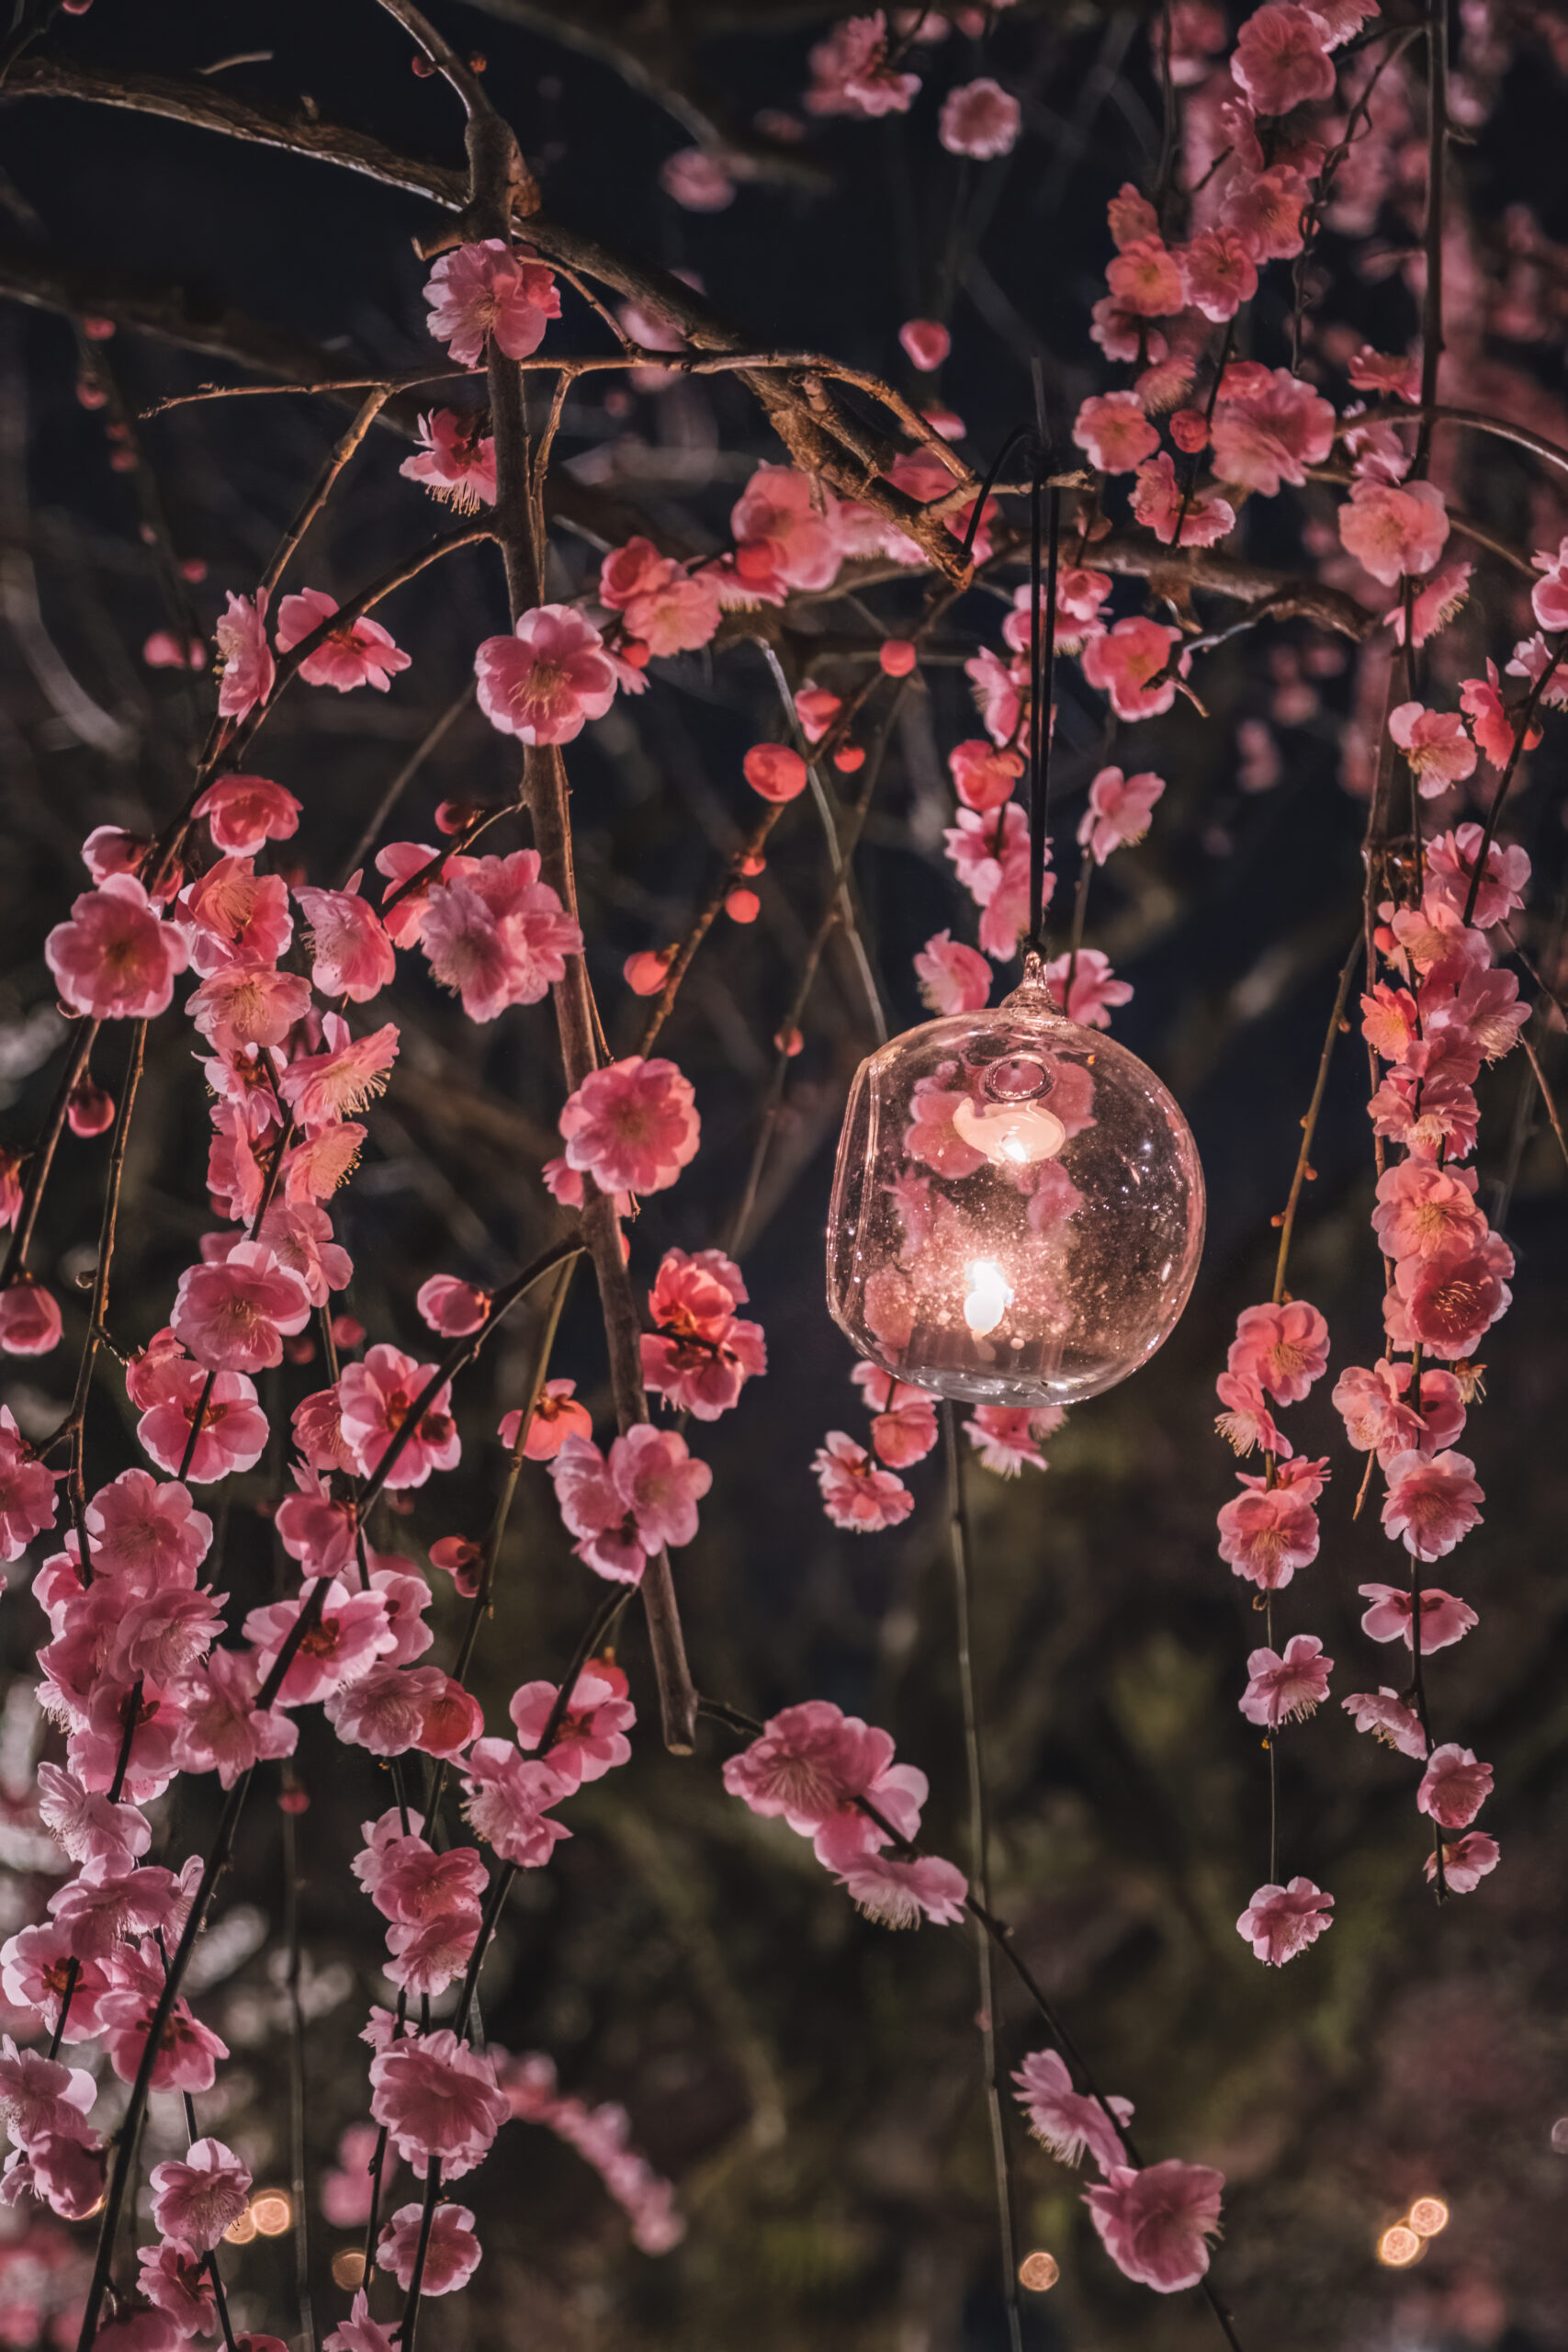 DSCF1302-Edit-1-scaled 京都府 北野天満宮(幻想的な梅のライトアップがおすすめのスポット! 撮影した写真の紹介、アクセス情報など)